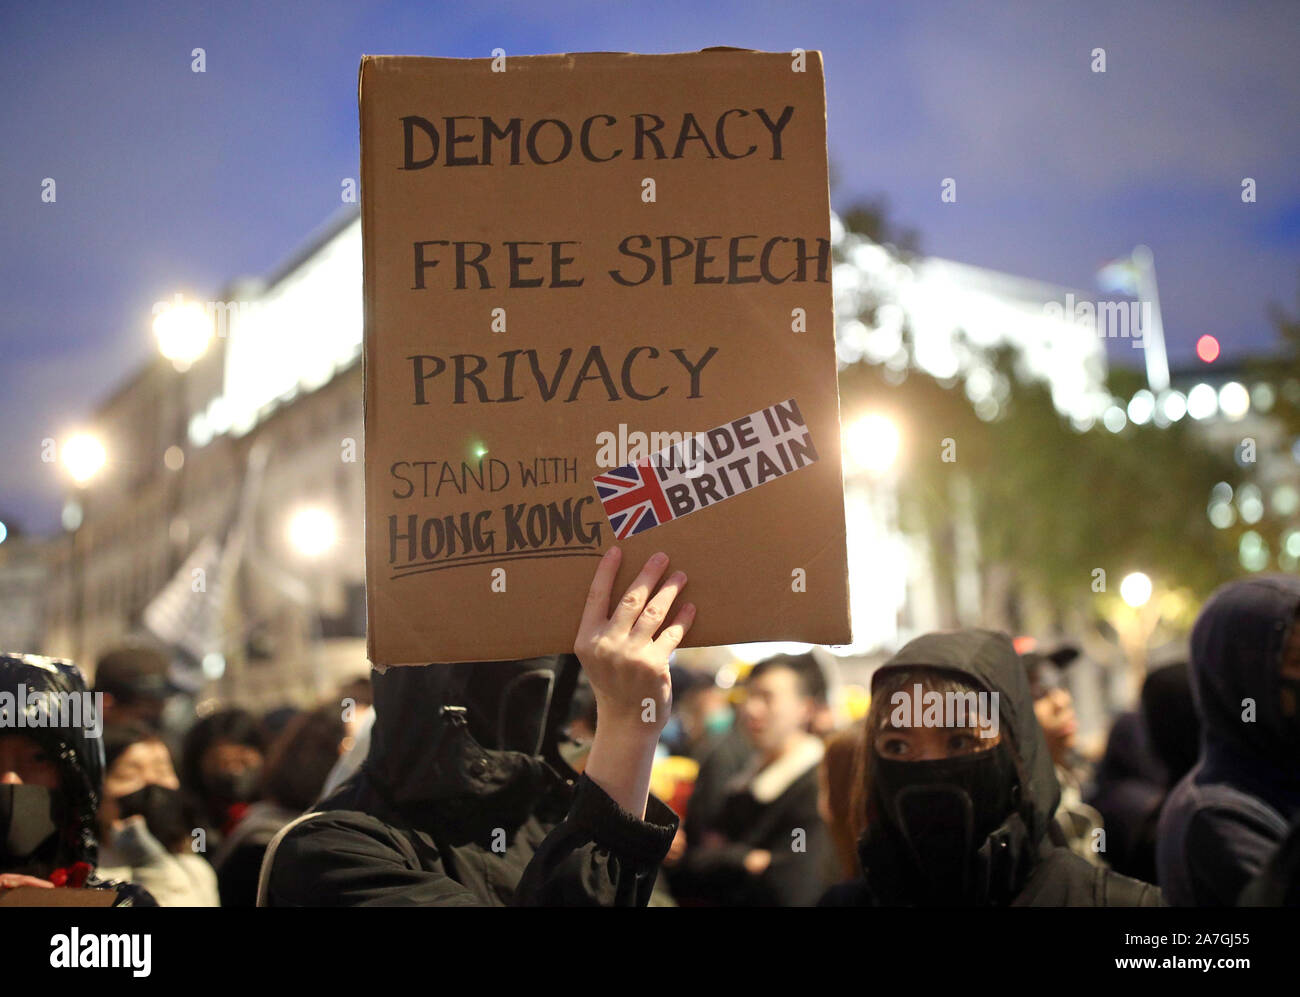 Hong Kong pro-democracy protesters taking part in a Hong Kong solidarity rally in Trafalgar Square, London. Stock Photo